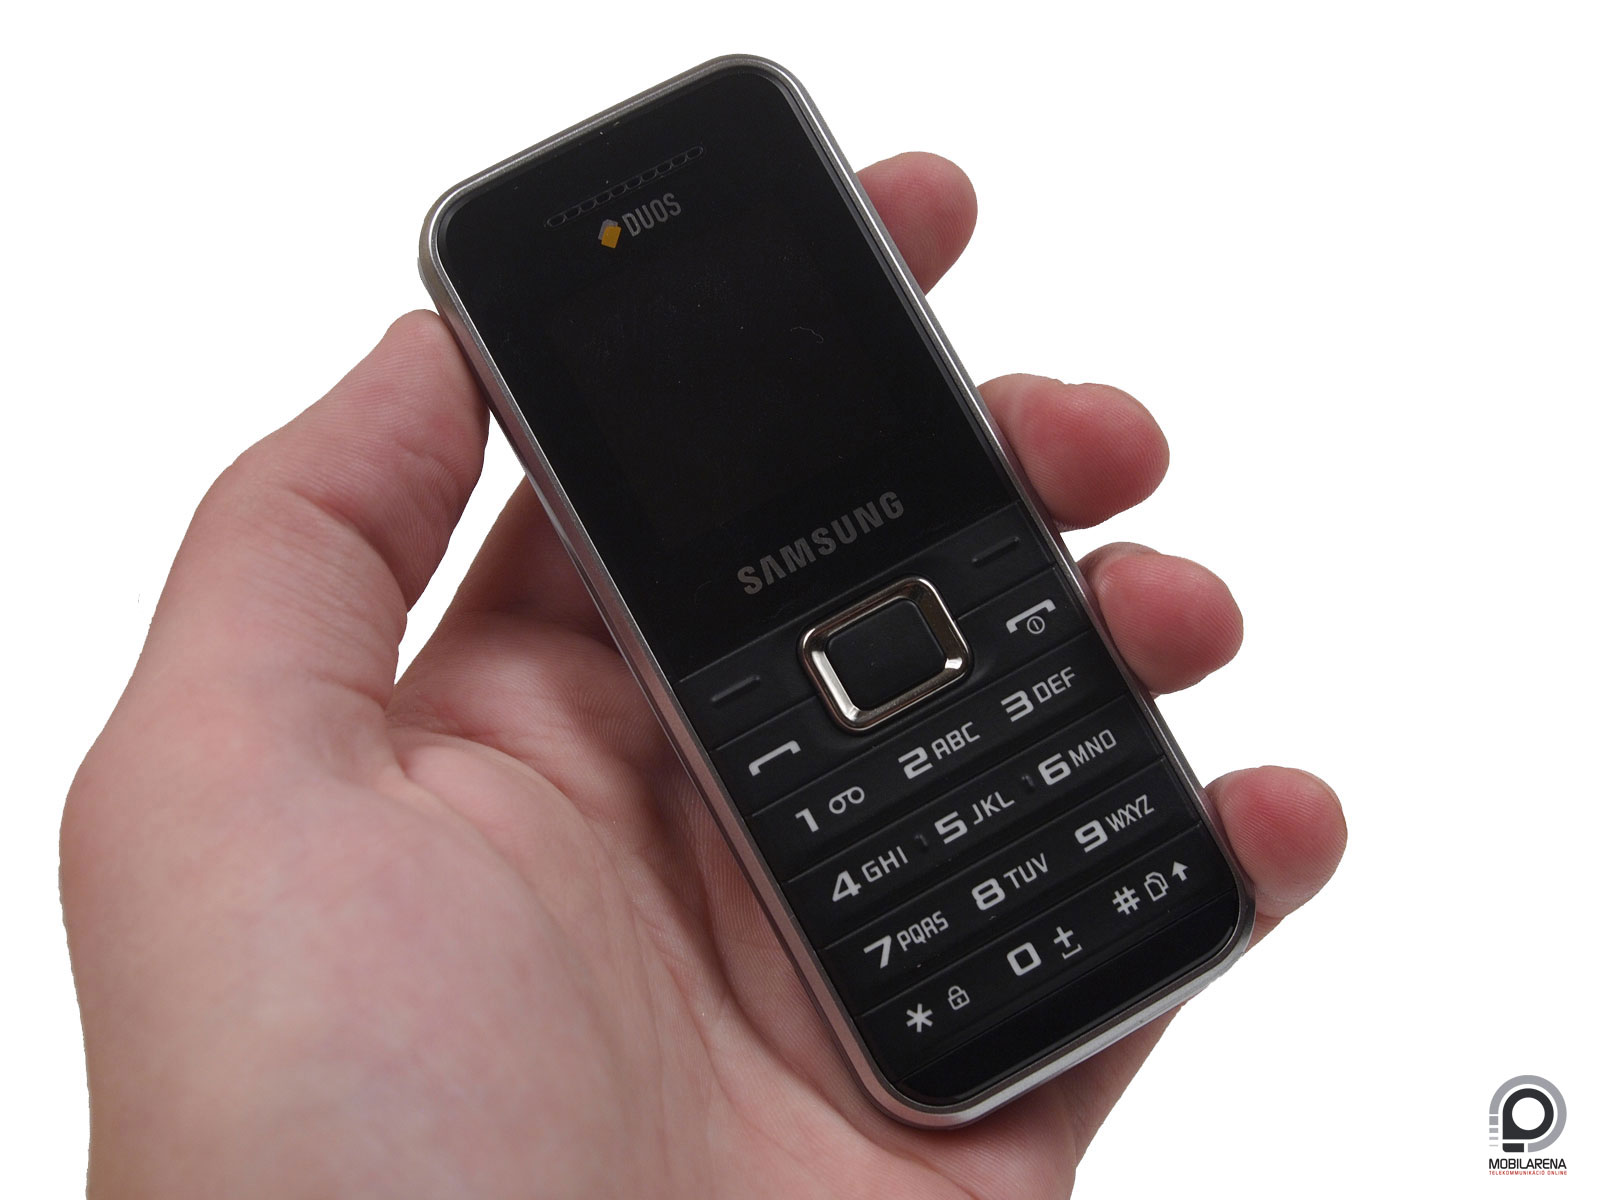 Samsung E1182 - olcsó akar lenni - Mobilarena Mobiltelefon teszt